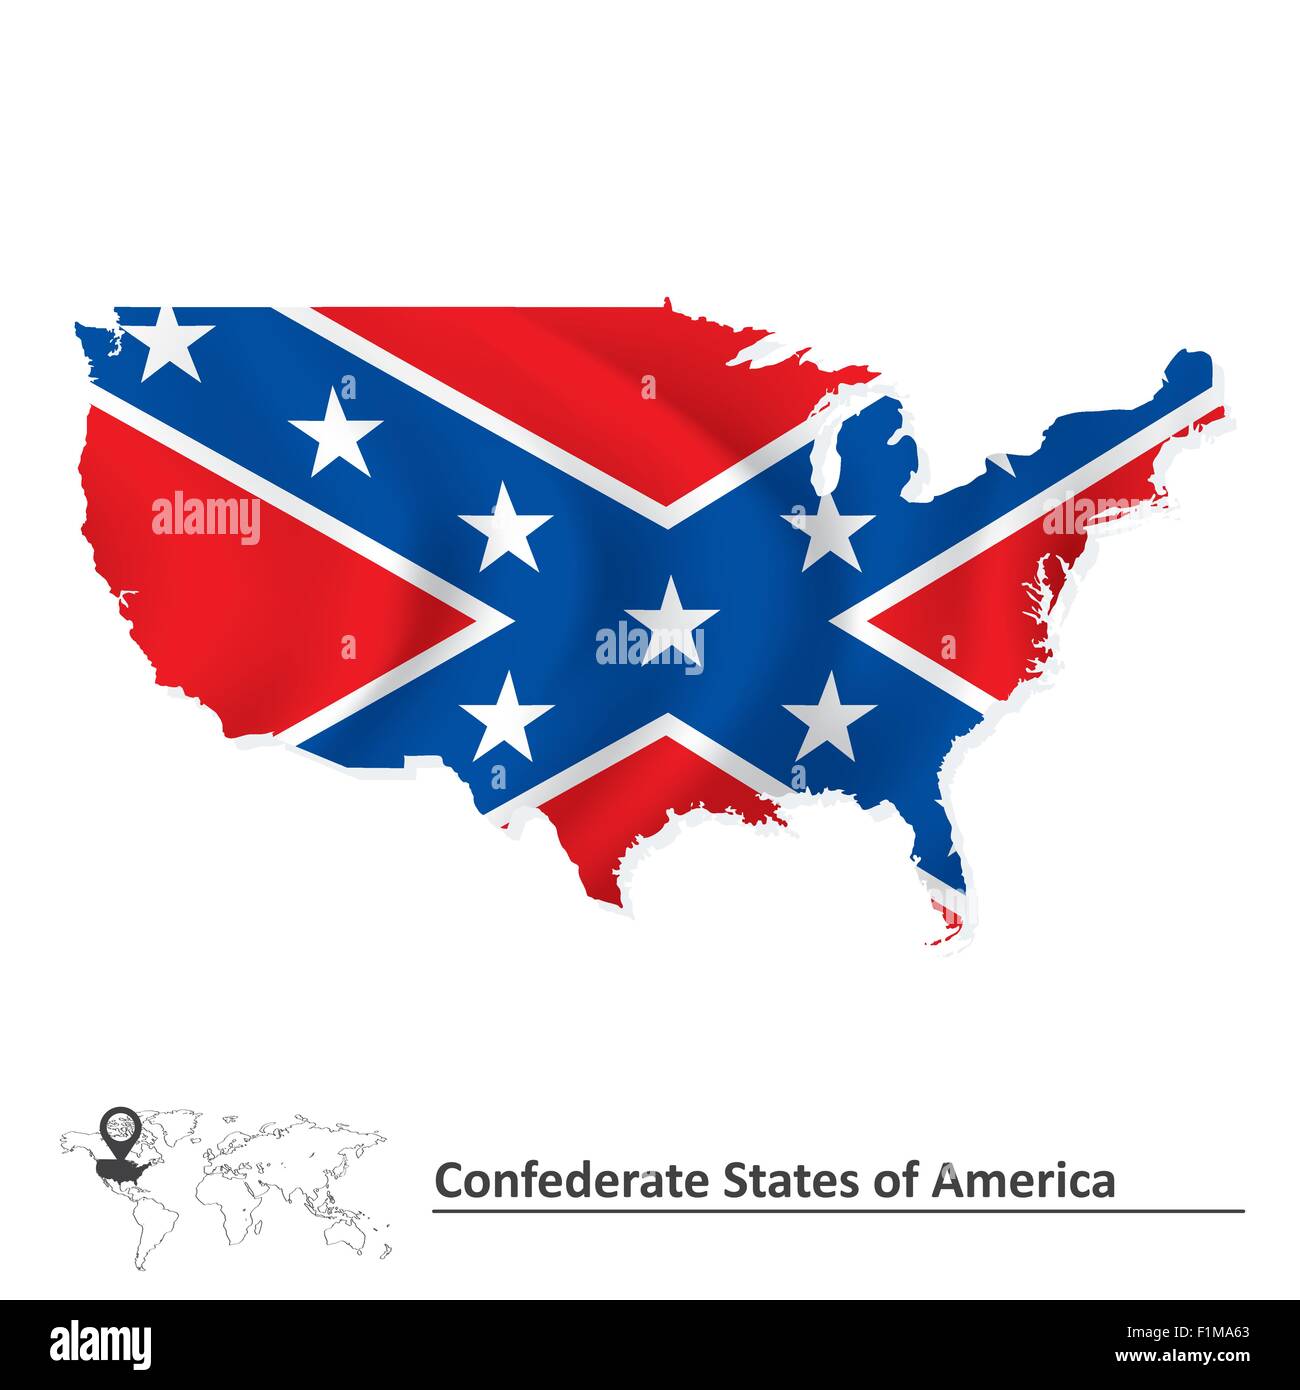 Flagge der Konföderierten Staaten von Amerika mit USA-Karte - Vektor-illustration Stock Vektor